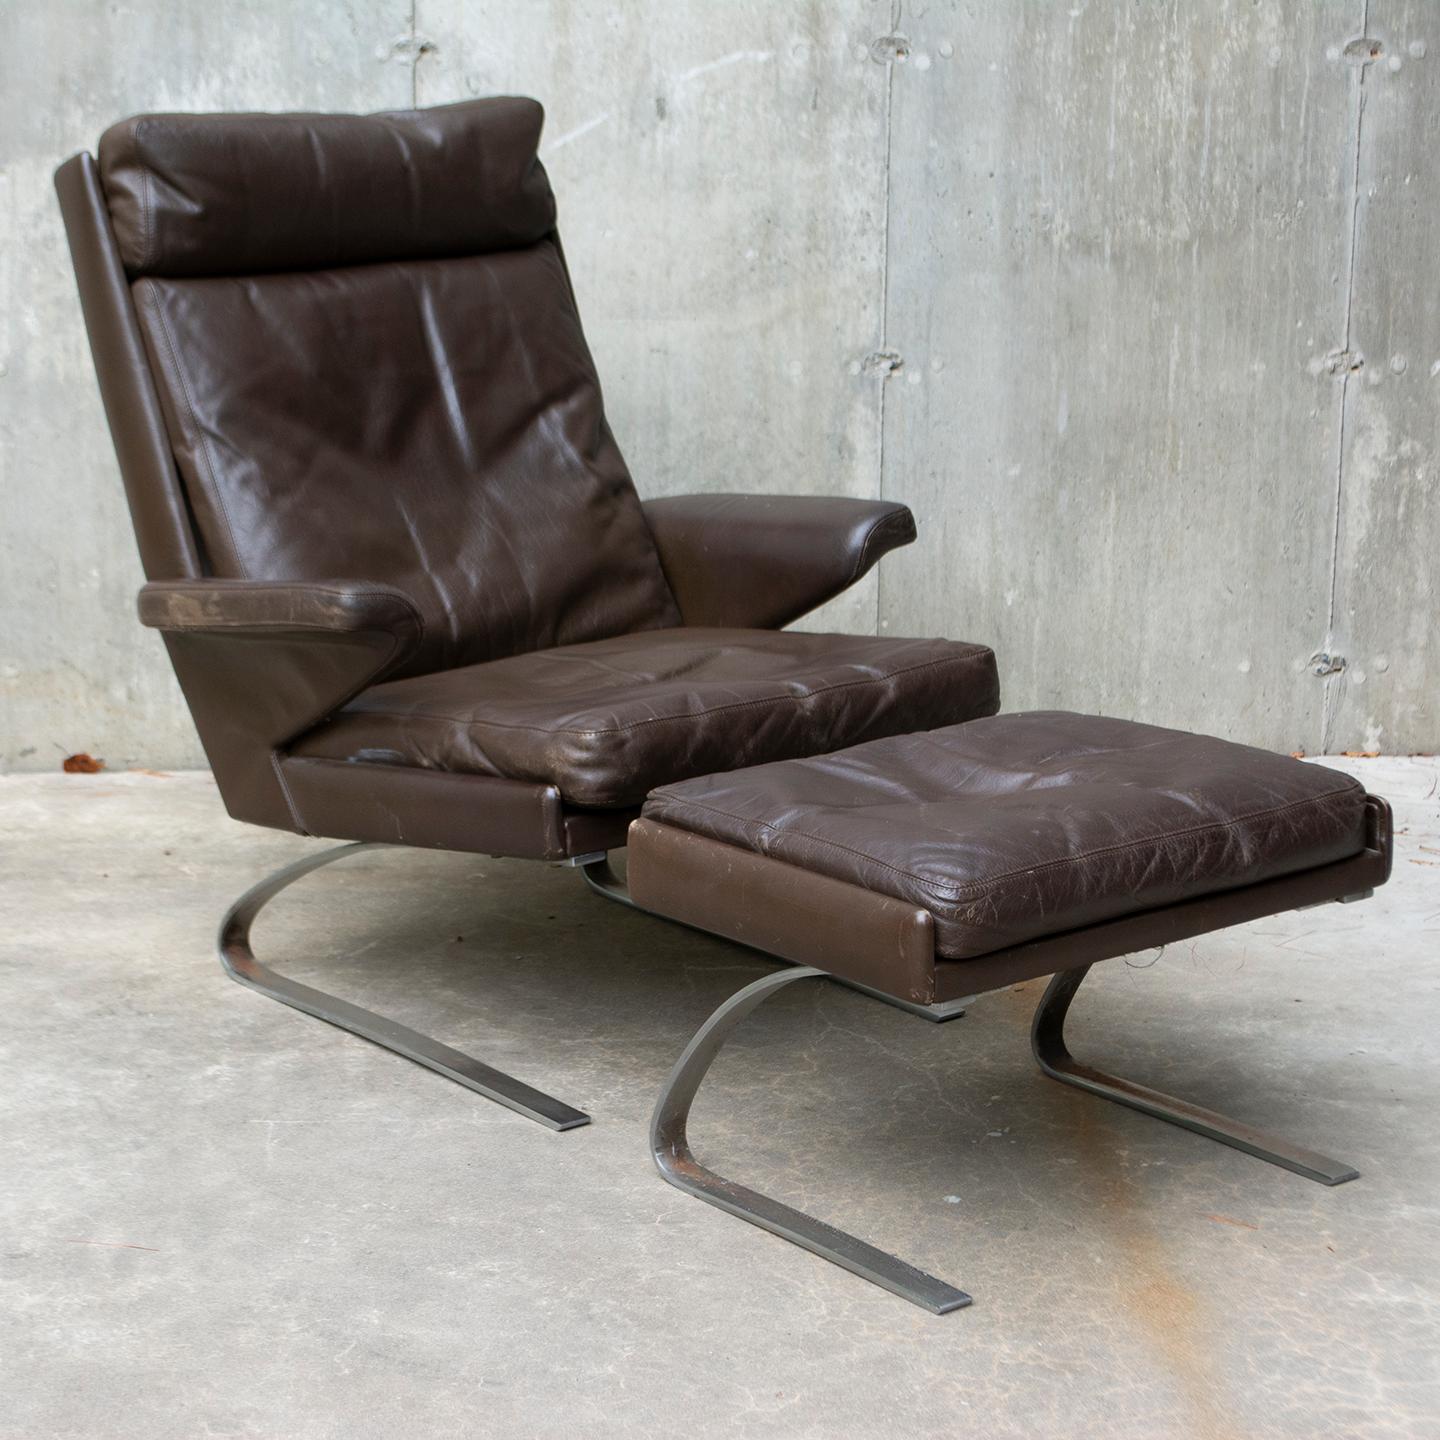 Swing Lounge Chair mit Ottomane, entworfen von Reinhold Adolf und Hans-Jürgen Schröpfer für COR Deutschland. Dieses Set hat einen Rahmen aus gebürstetem Stahl und wird in seinem ursprünglichen dunkelbraunen, durch Alter und Gebrauch patinierten